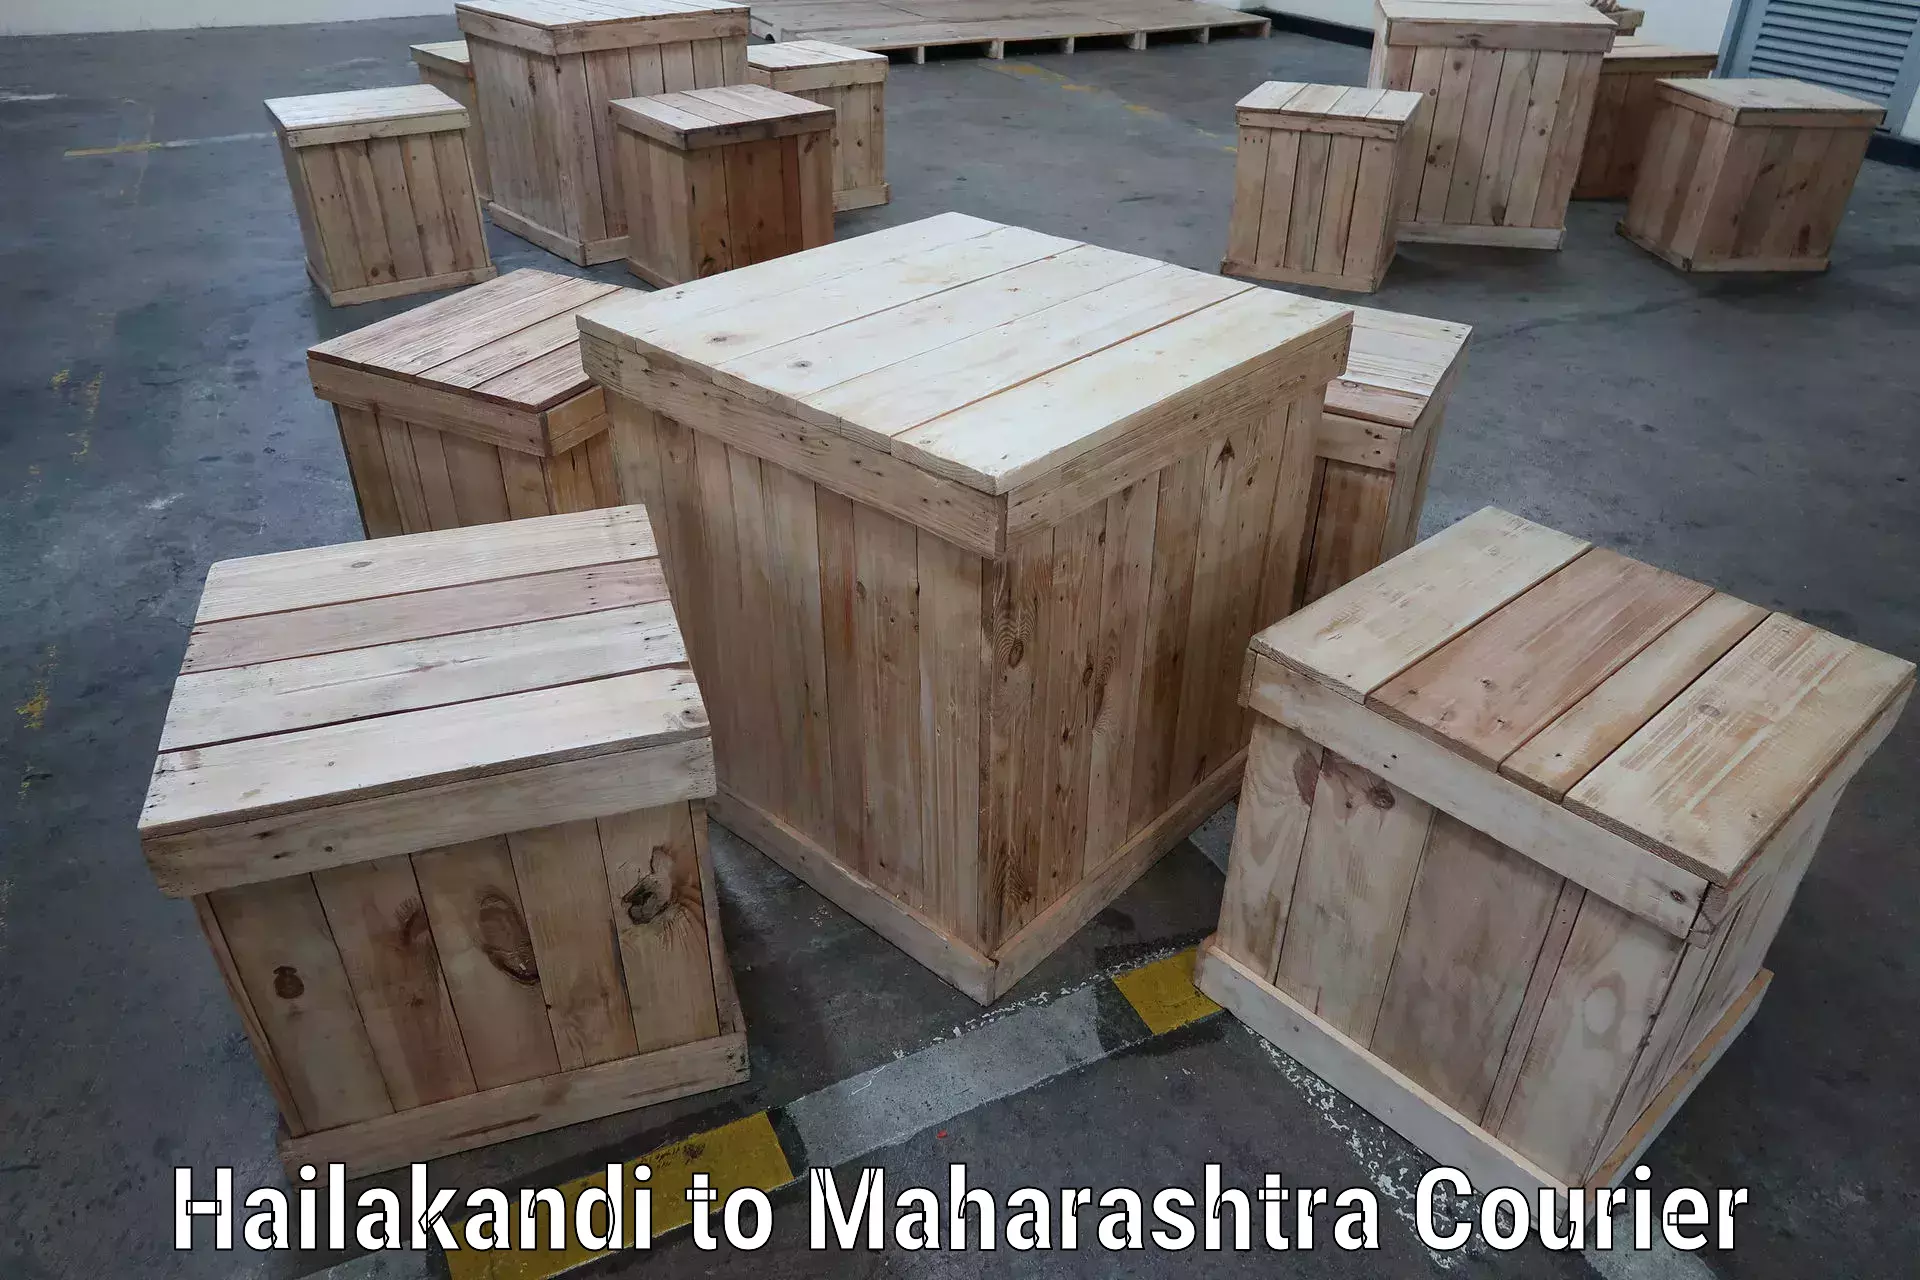 Next-day freight services Hailakandi to Maharashtra